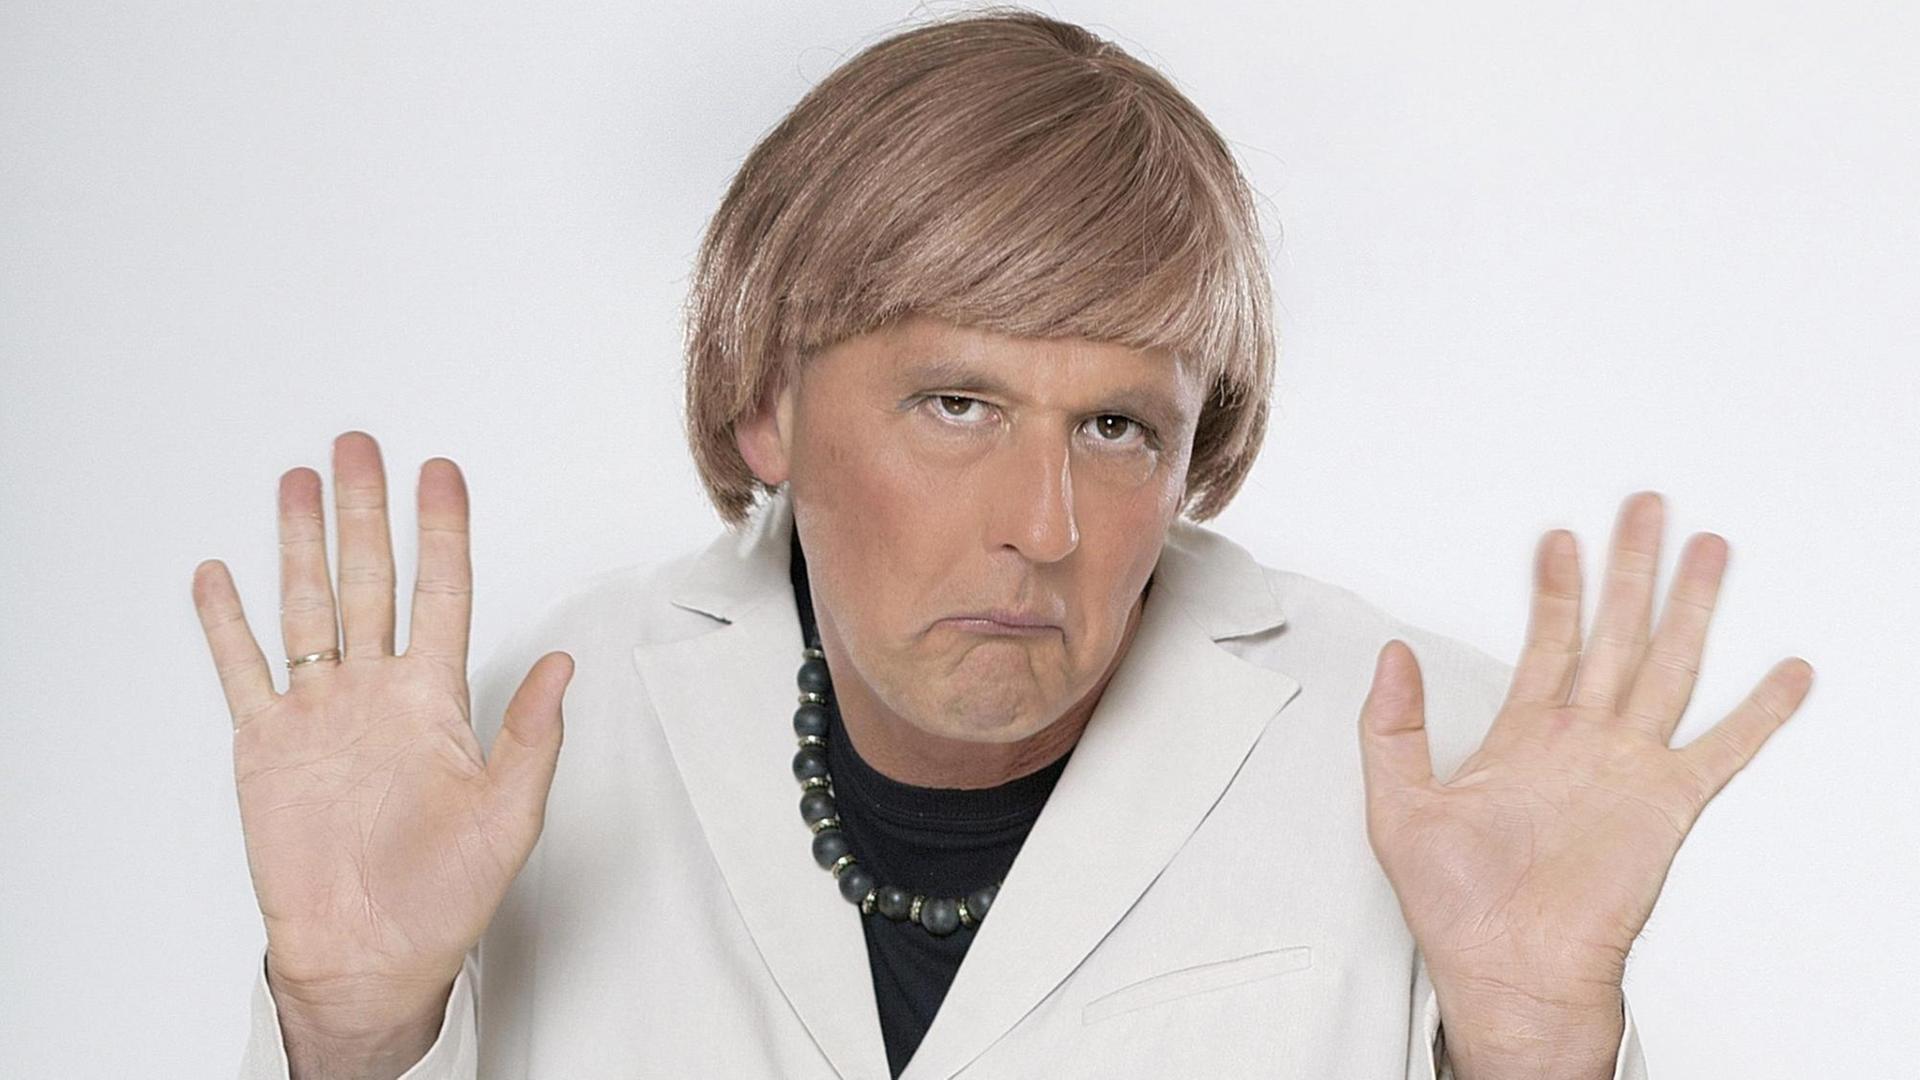 Der Kabarettist Reiner Kröhnert als "Angie" (verkleidet als Angela Merkel).